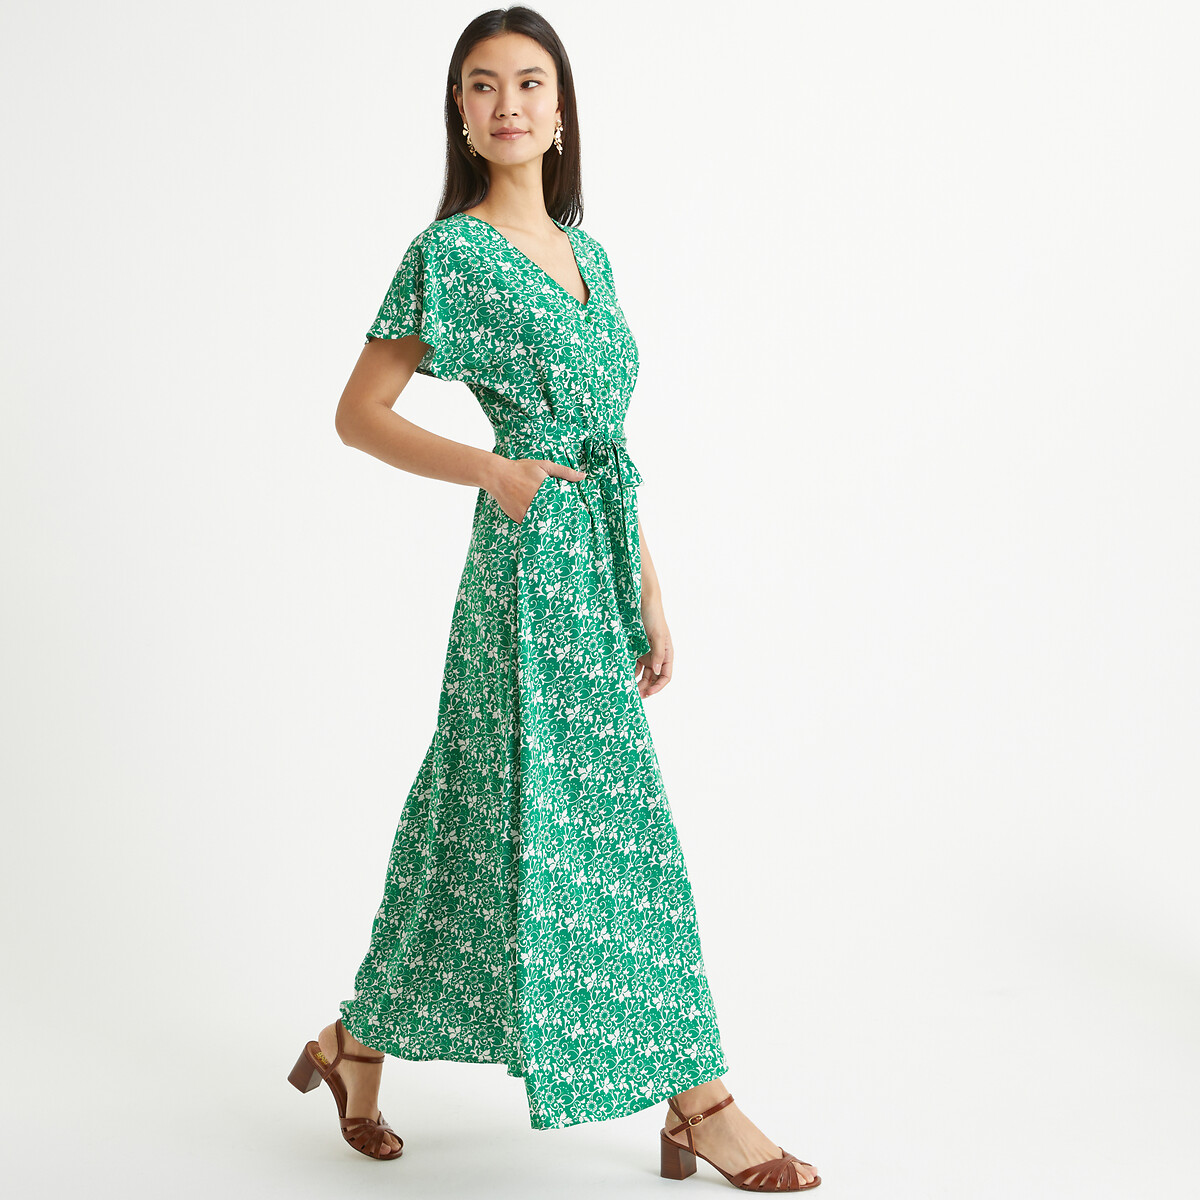 Платье длинное расклешенное с цветочным принтом 58 зеленый платье расклешенное с принтом uniqlo зеленый